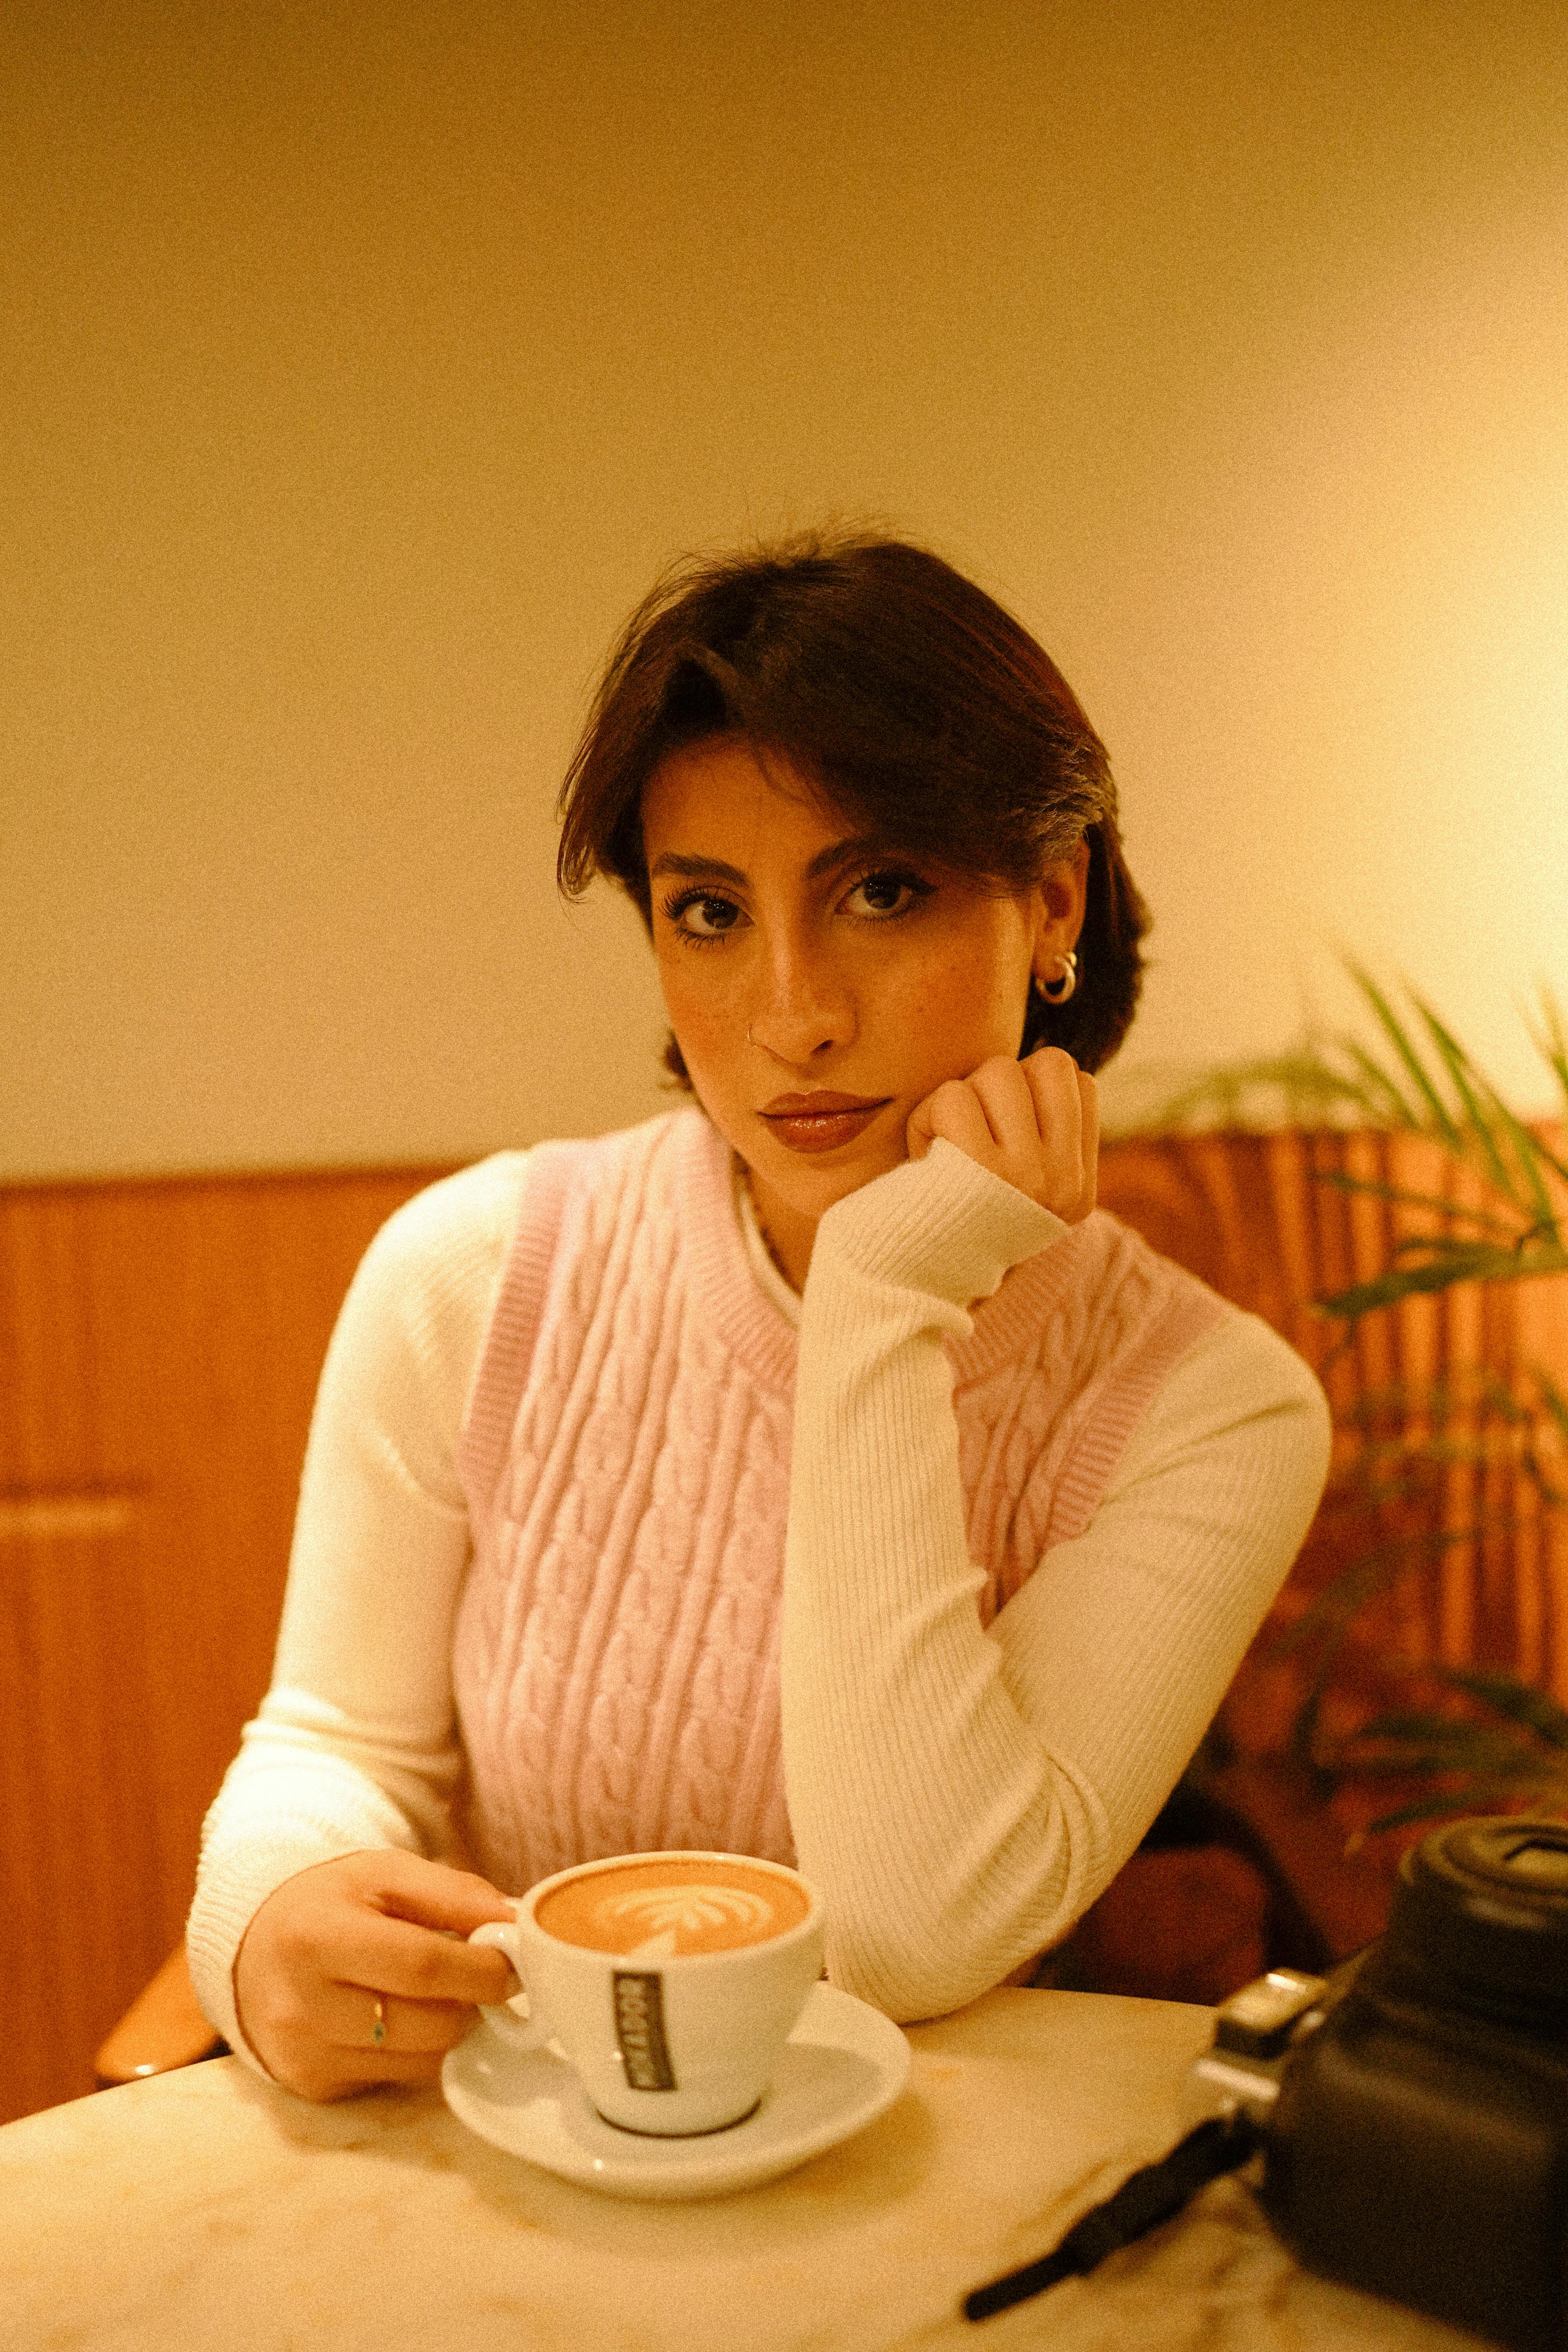 Eine Frau schaut unbeeindruckt beim Kaffee trinken | Quelle: Pexels